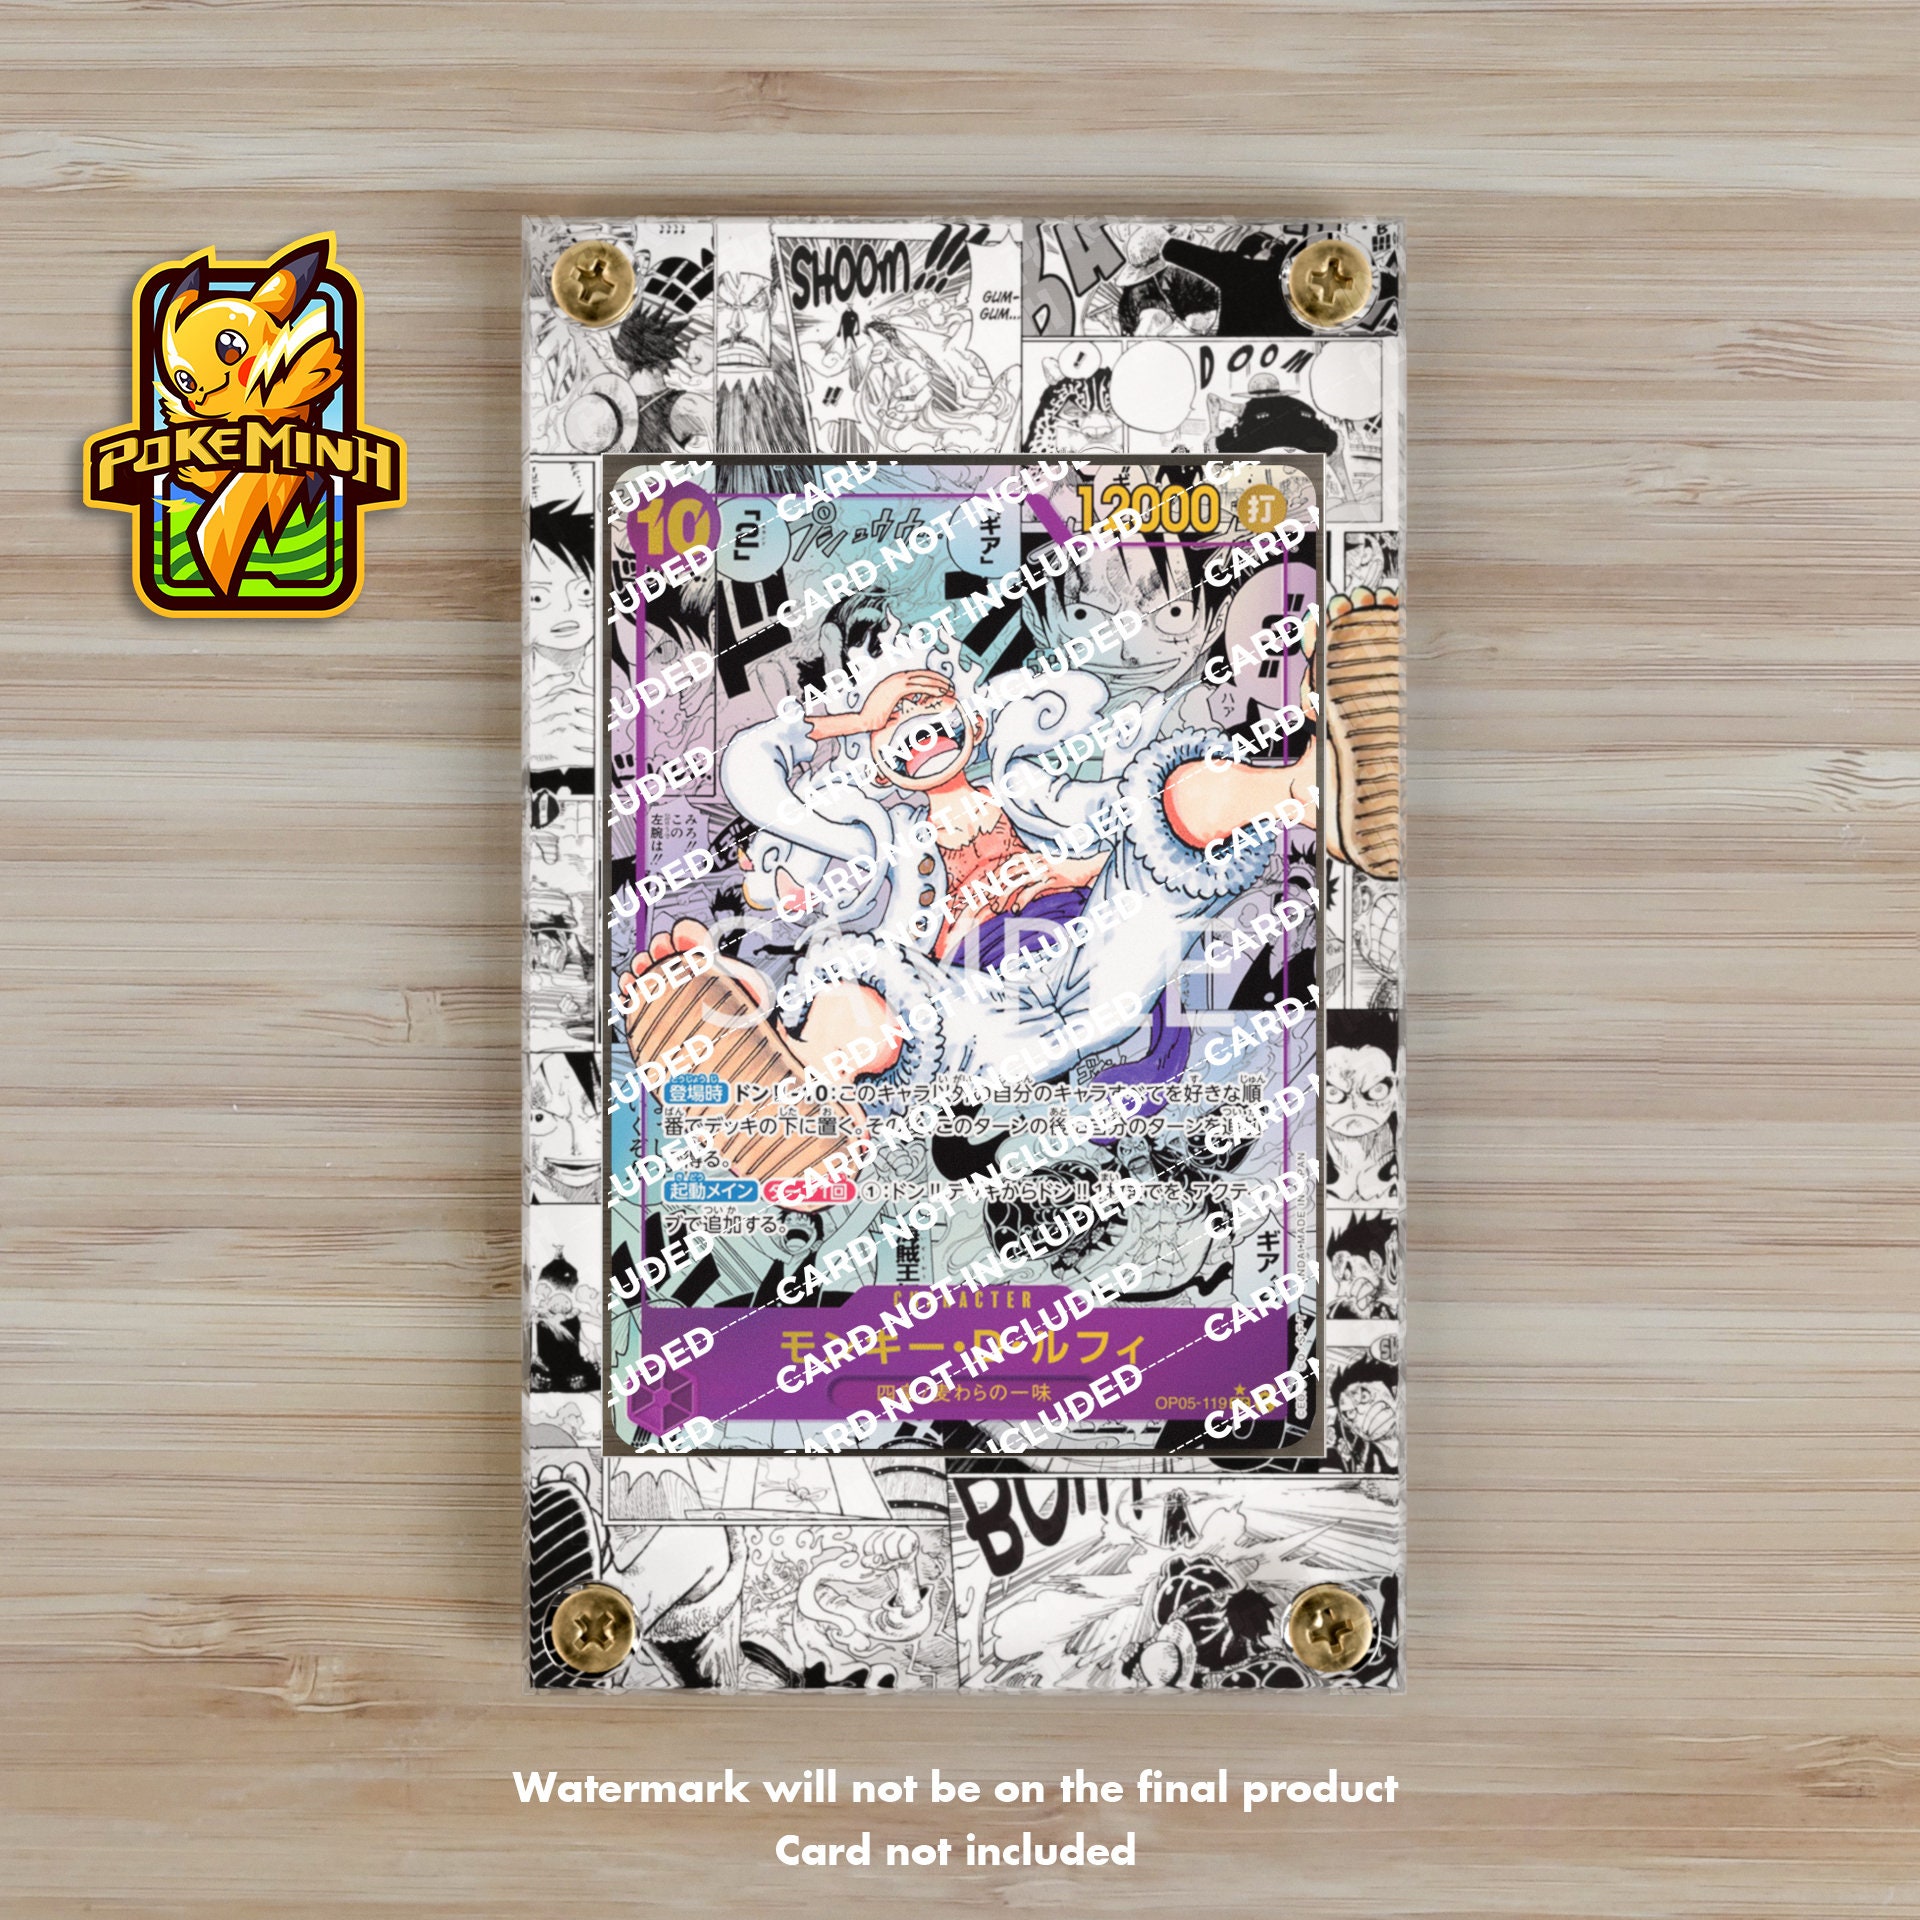 Custom One Piece Card Sleeve Digital Art by Chonk.yi : r/OnePieceTCG